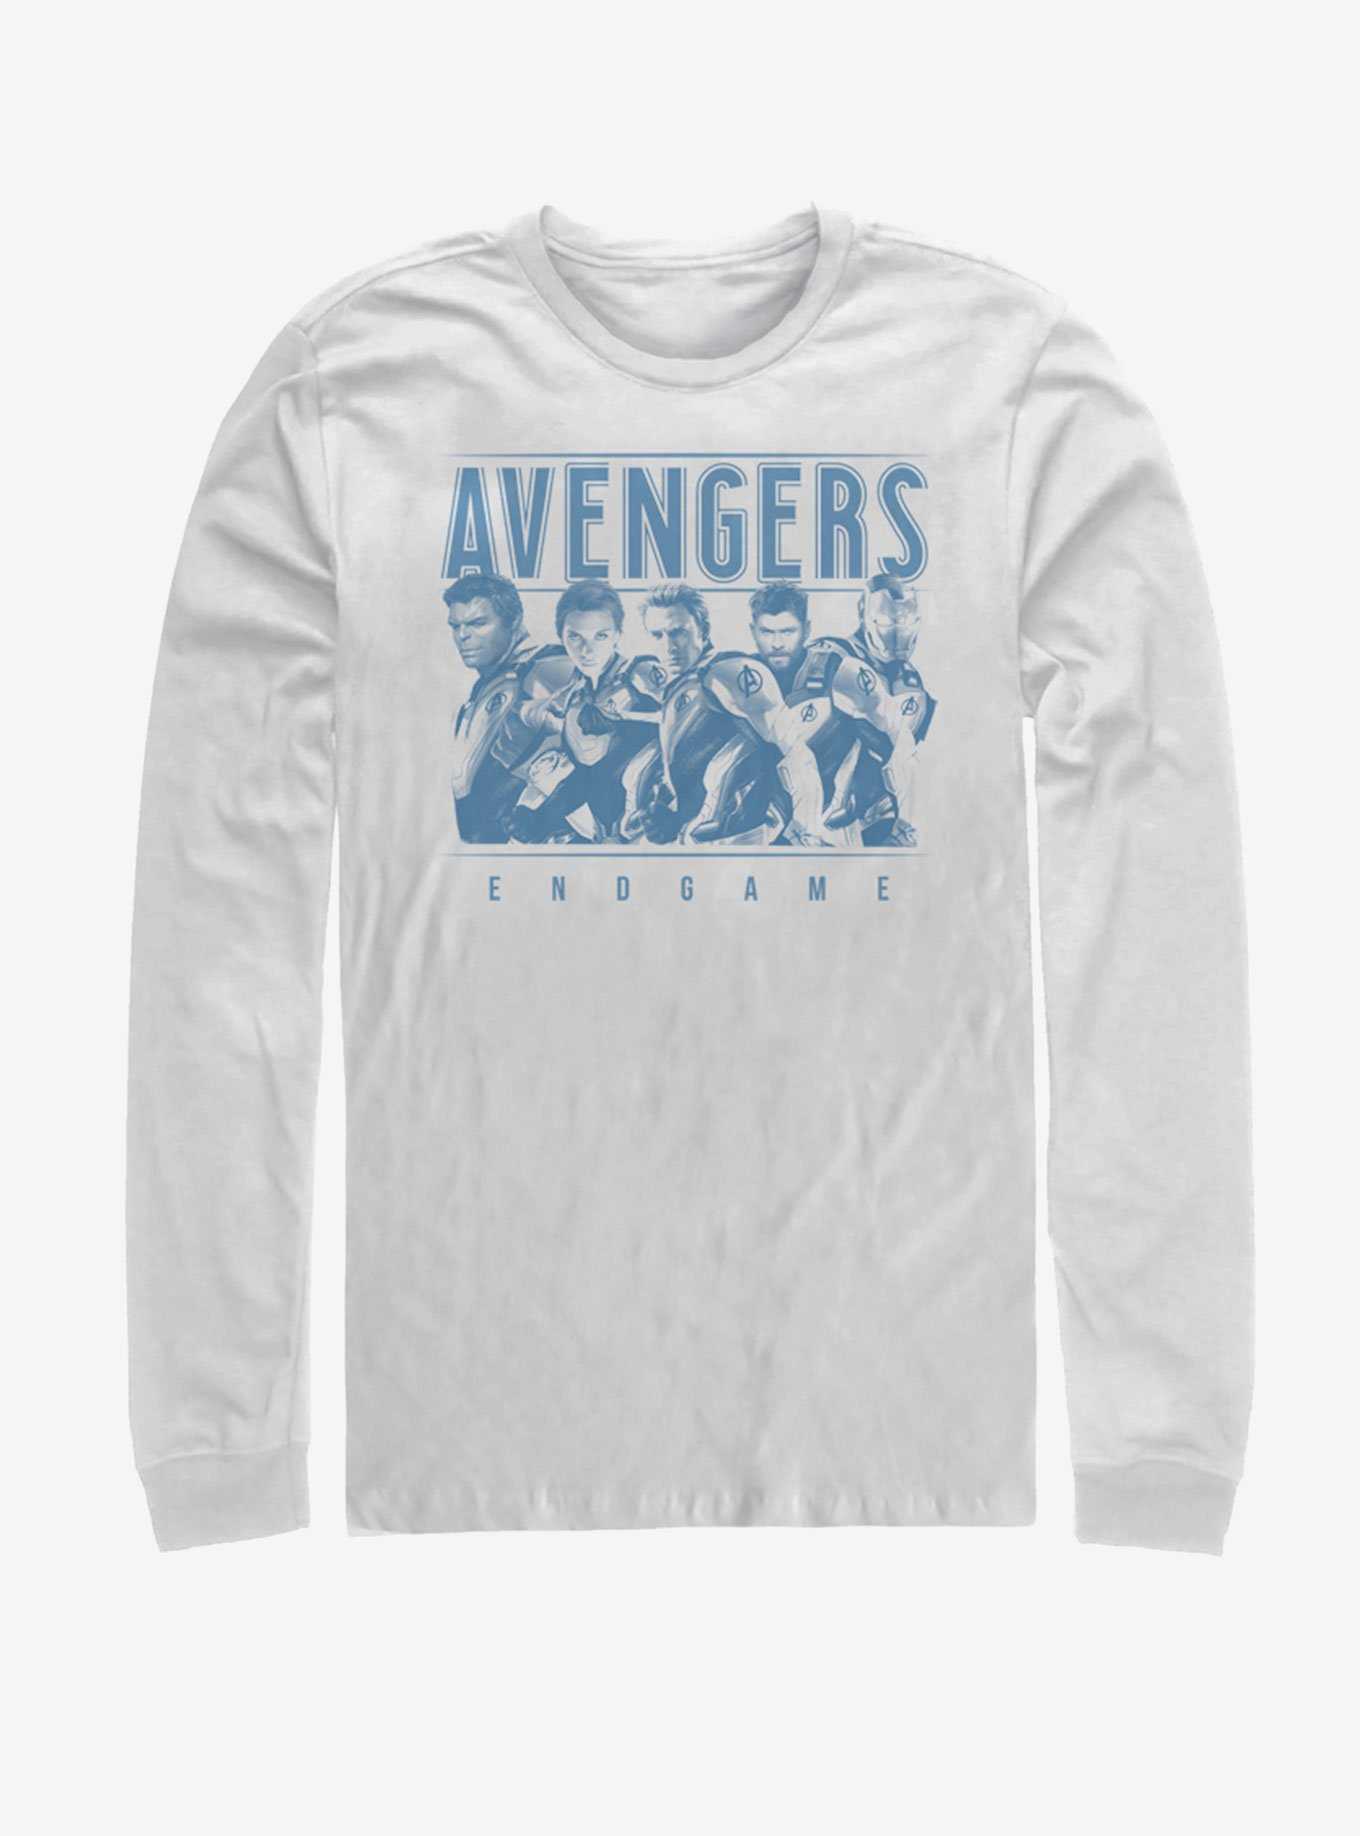 Marvel Avengers: Endgame Avenger Endgame Group Long-Sleeve T-Shirt, , hi-res